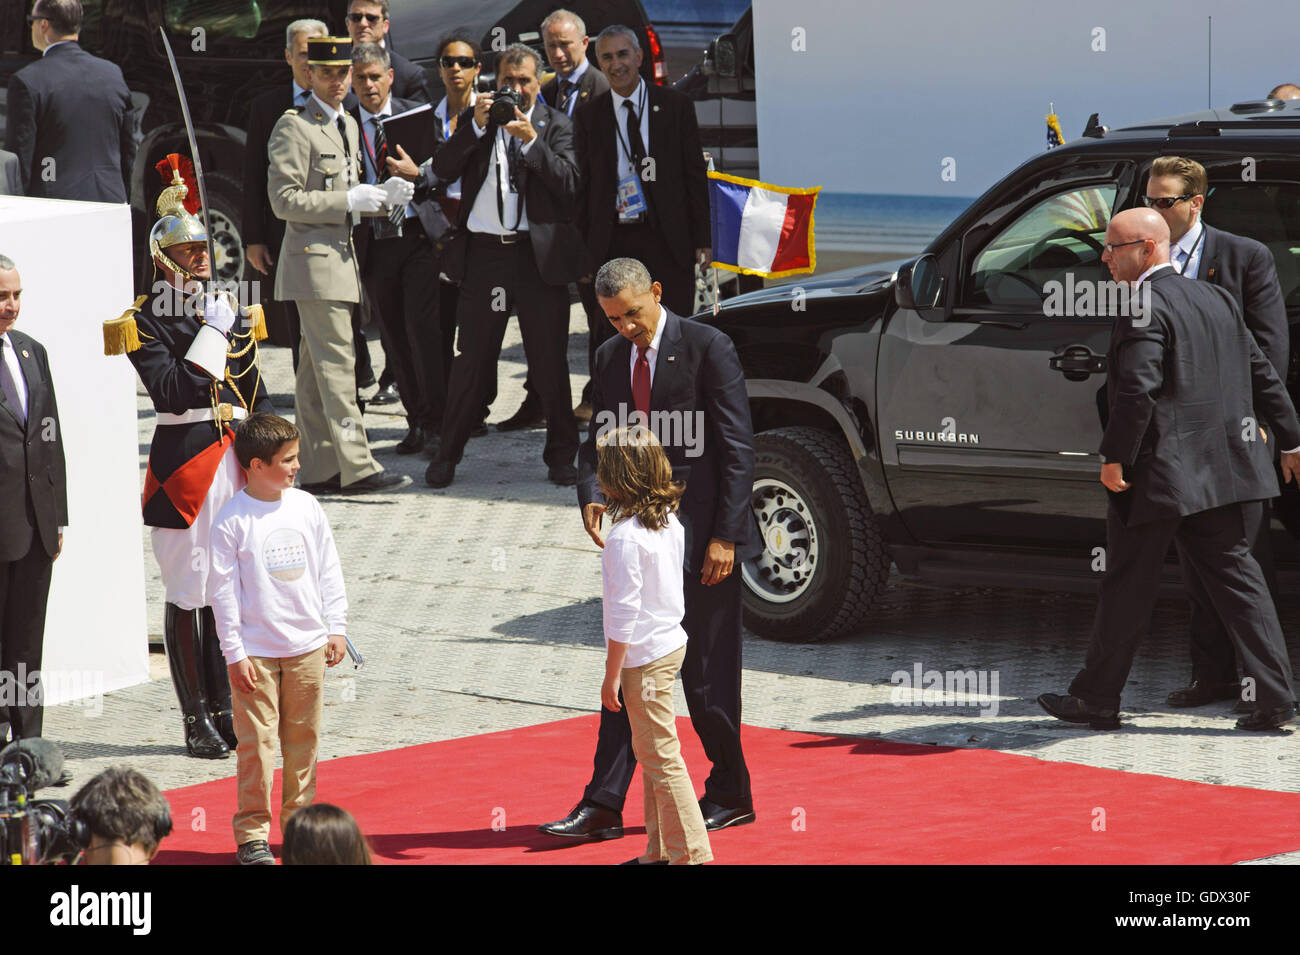 Barack Obama atiende el Día D memorial en Francia, 2014 Foto de stock